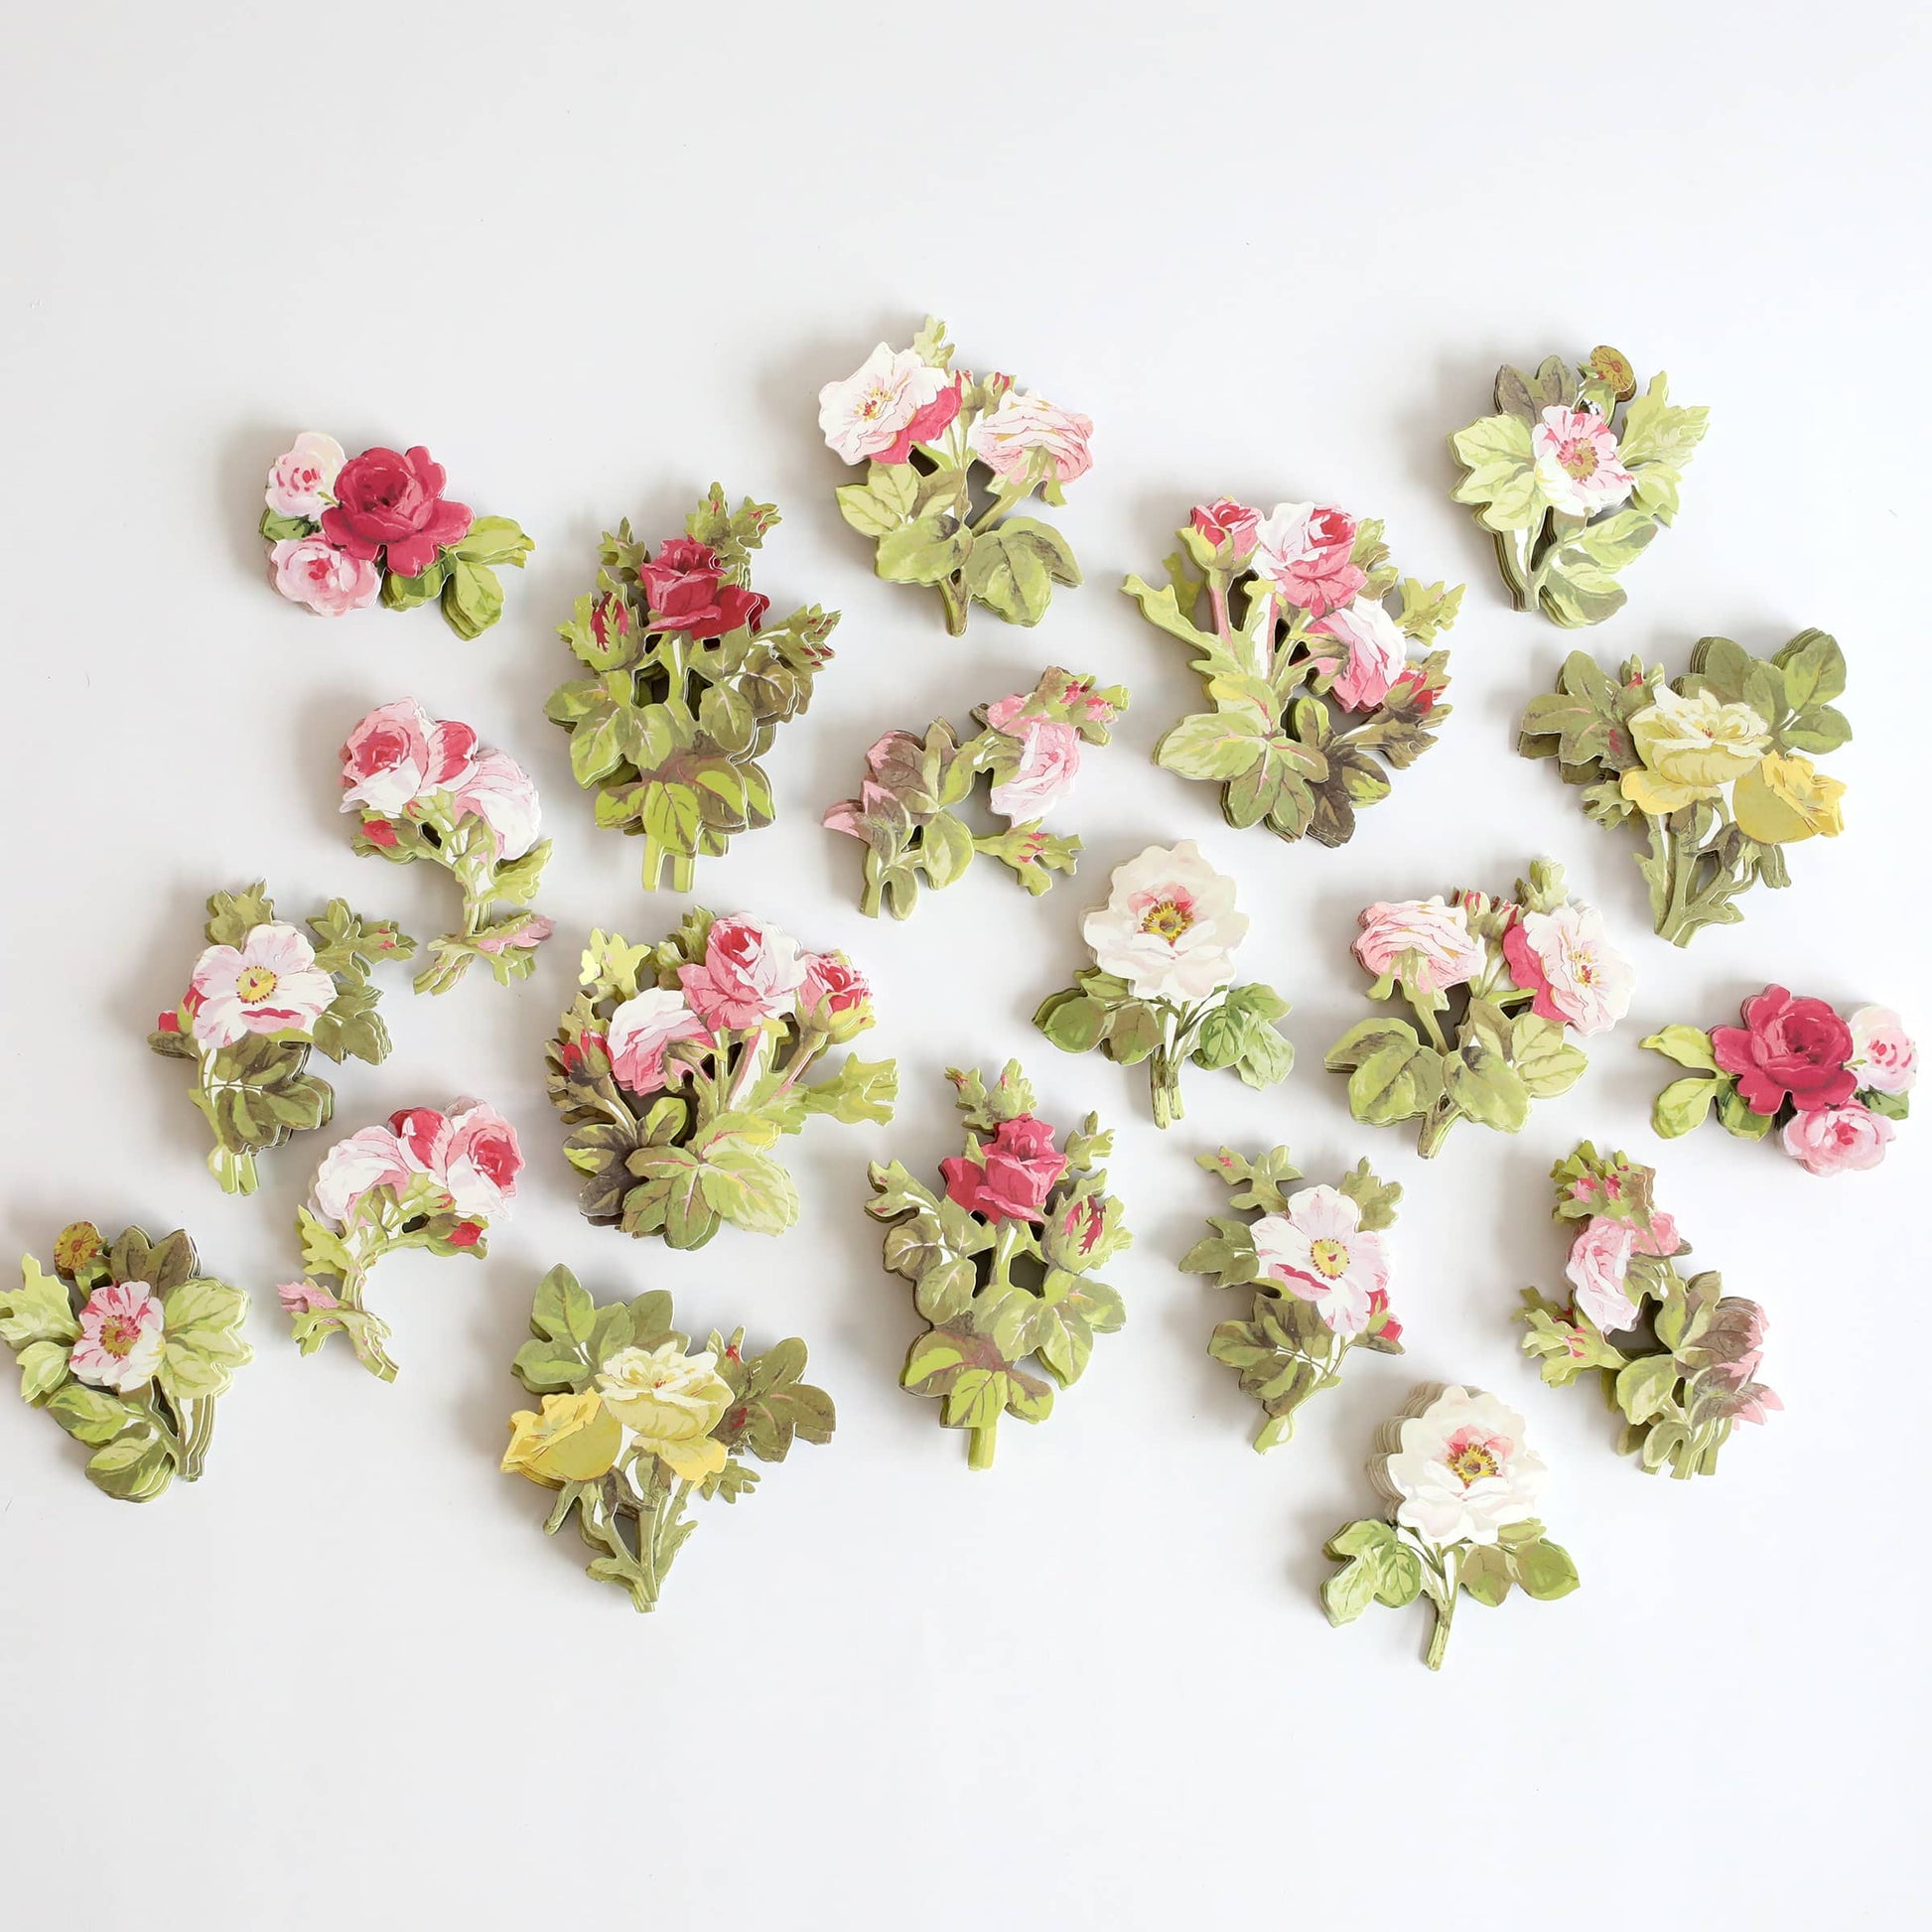 Anna Griffin - Stickers - Garden Floral